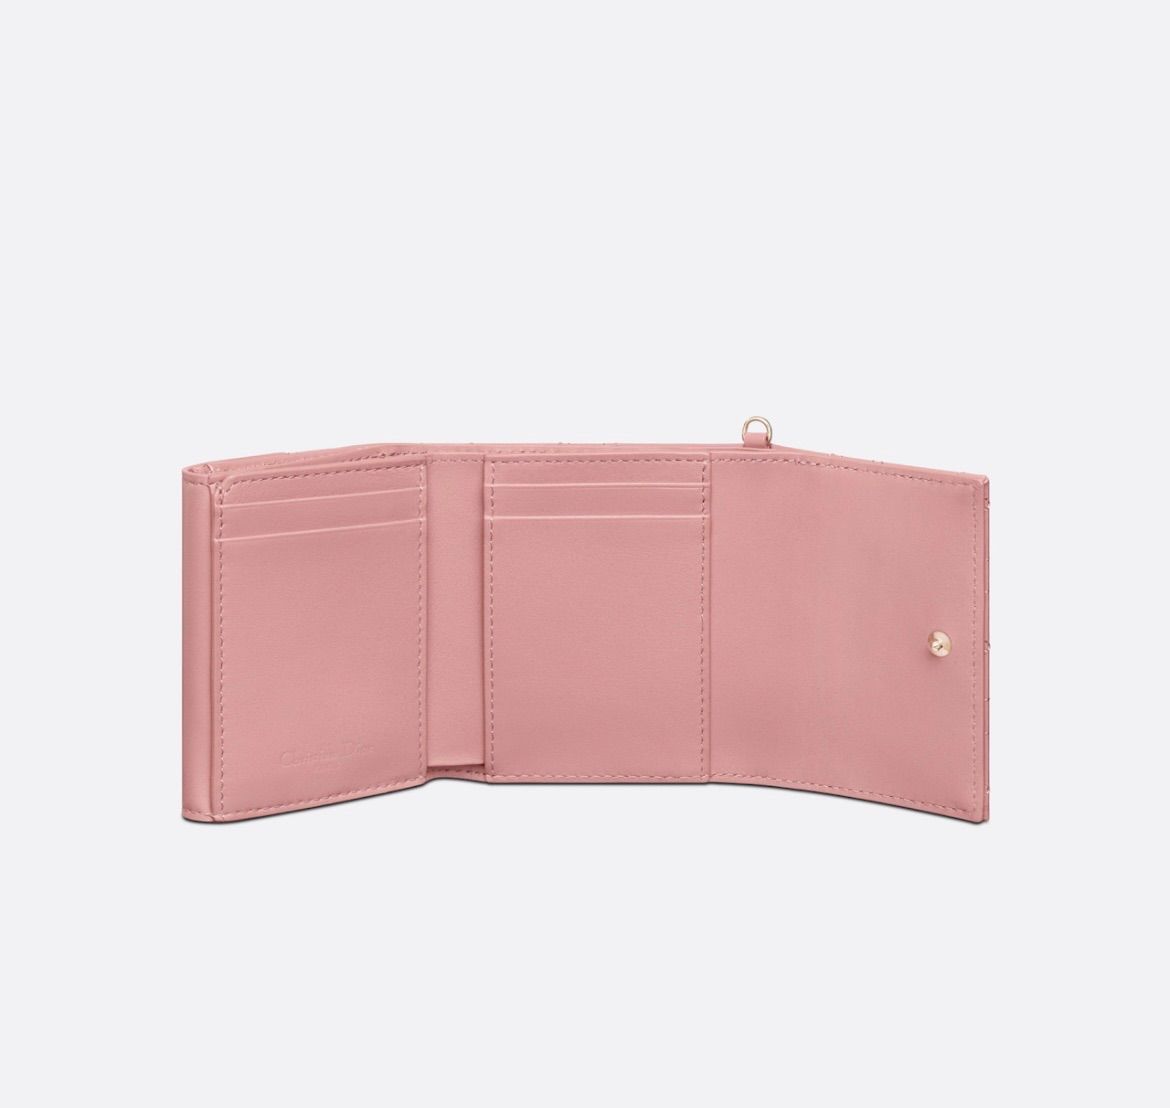 新品 Christian Dior ディオール LADY DIOR ロータスウォレット 財布 アンティークピンク ピンク